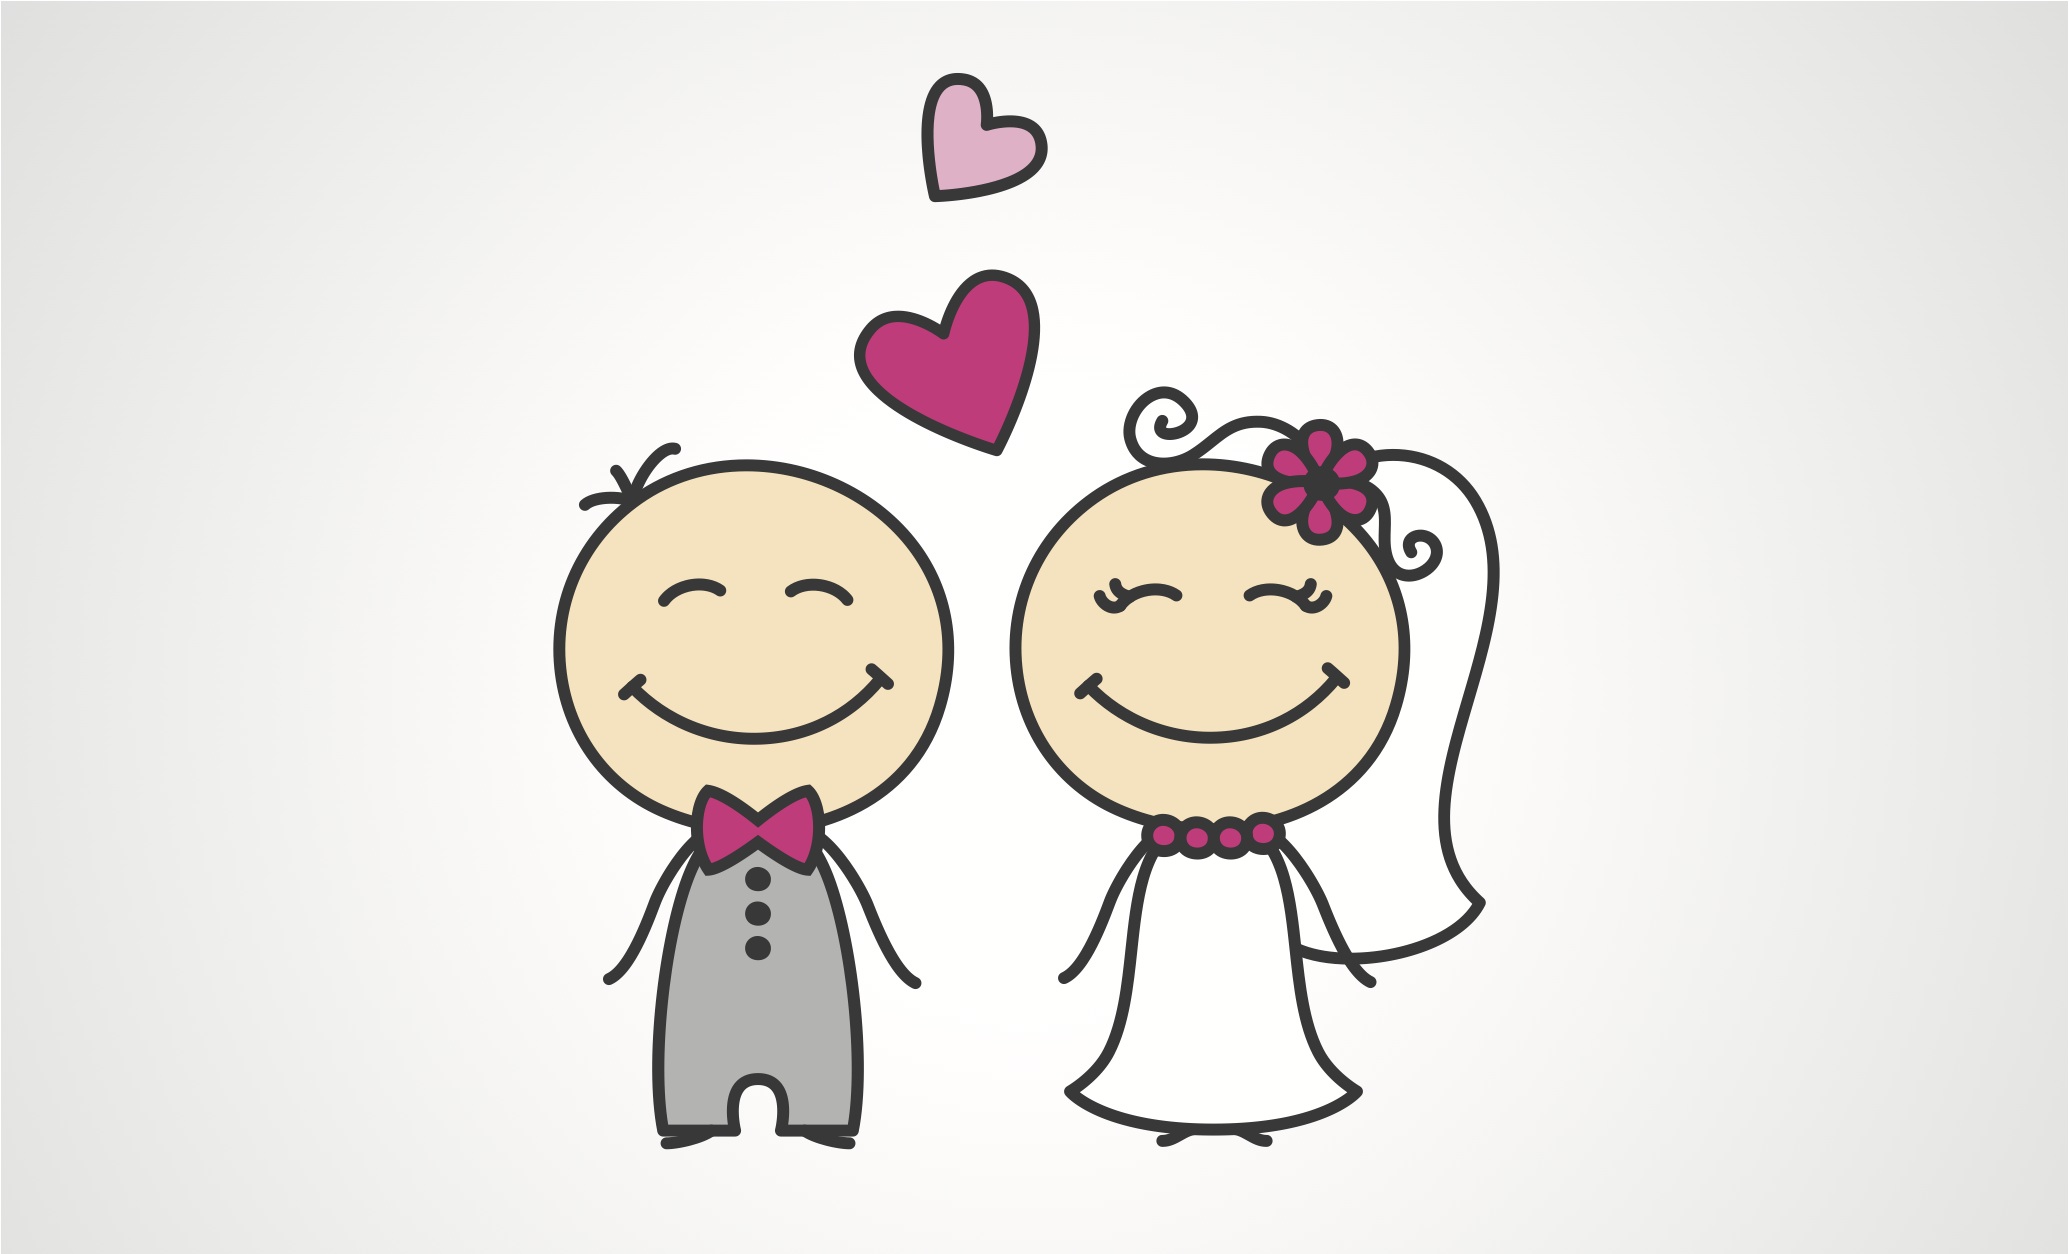 Quy định pháp luật Việt Nam về độ tuổi kết hôn